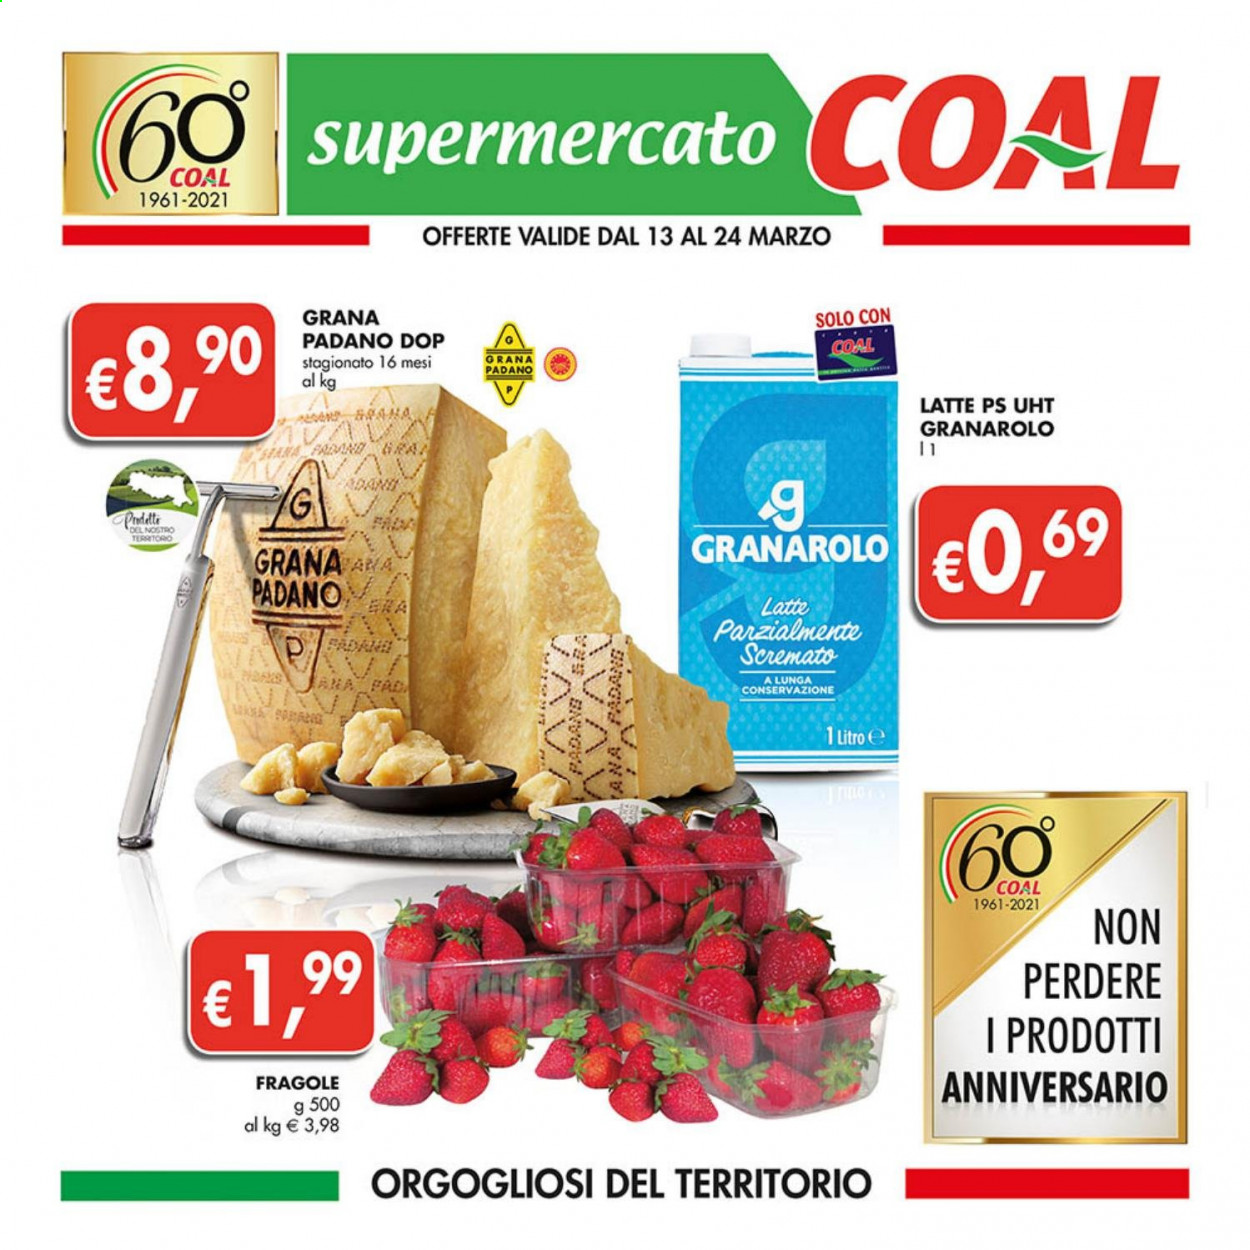 thumbnail - Volantino COAL - 13/3/2021 - 24/3/2021 - Prodotti in offerta - fragole, Granarolo, formaggio, Grana Padano, latte, pala. Pagina 1.